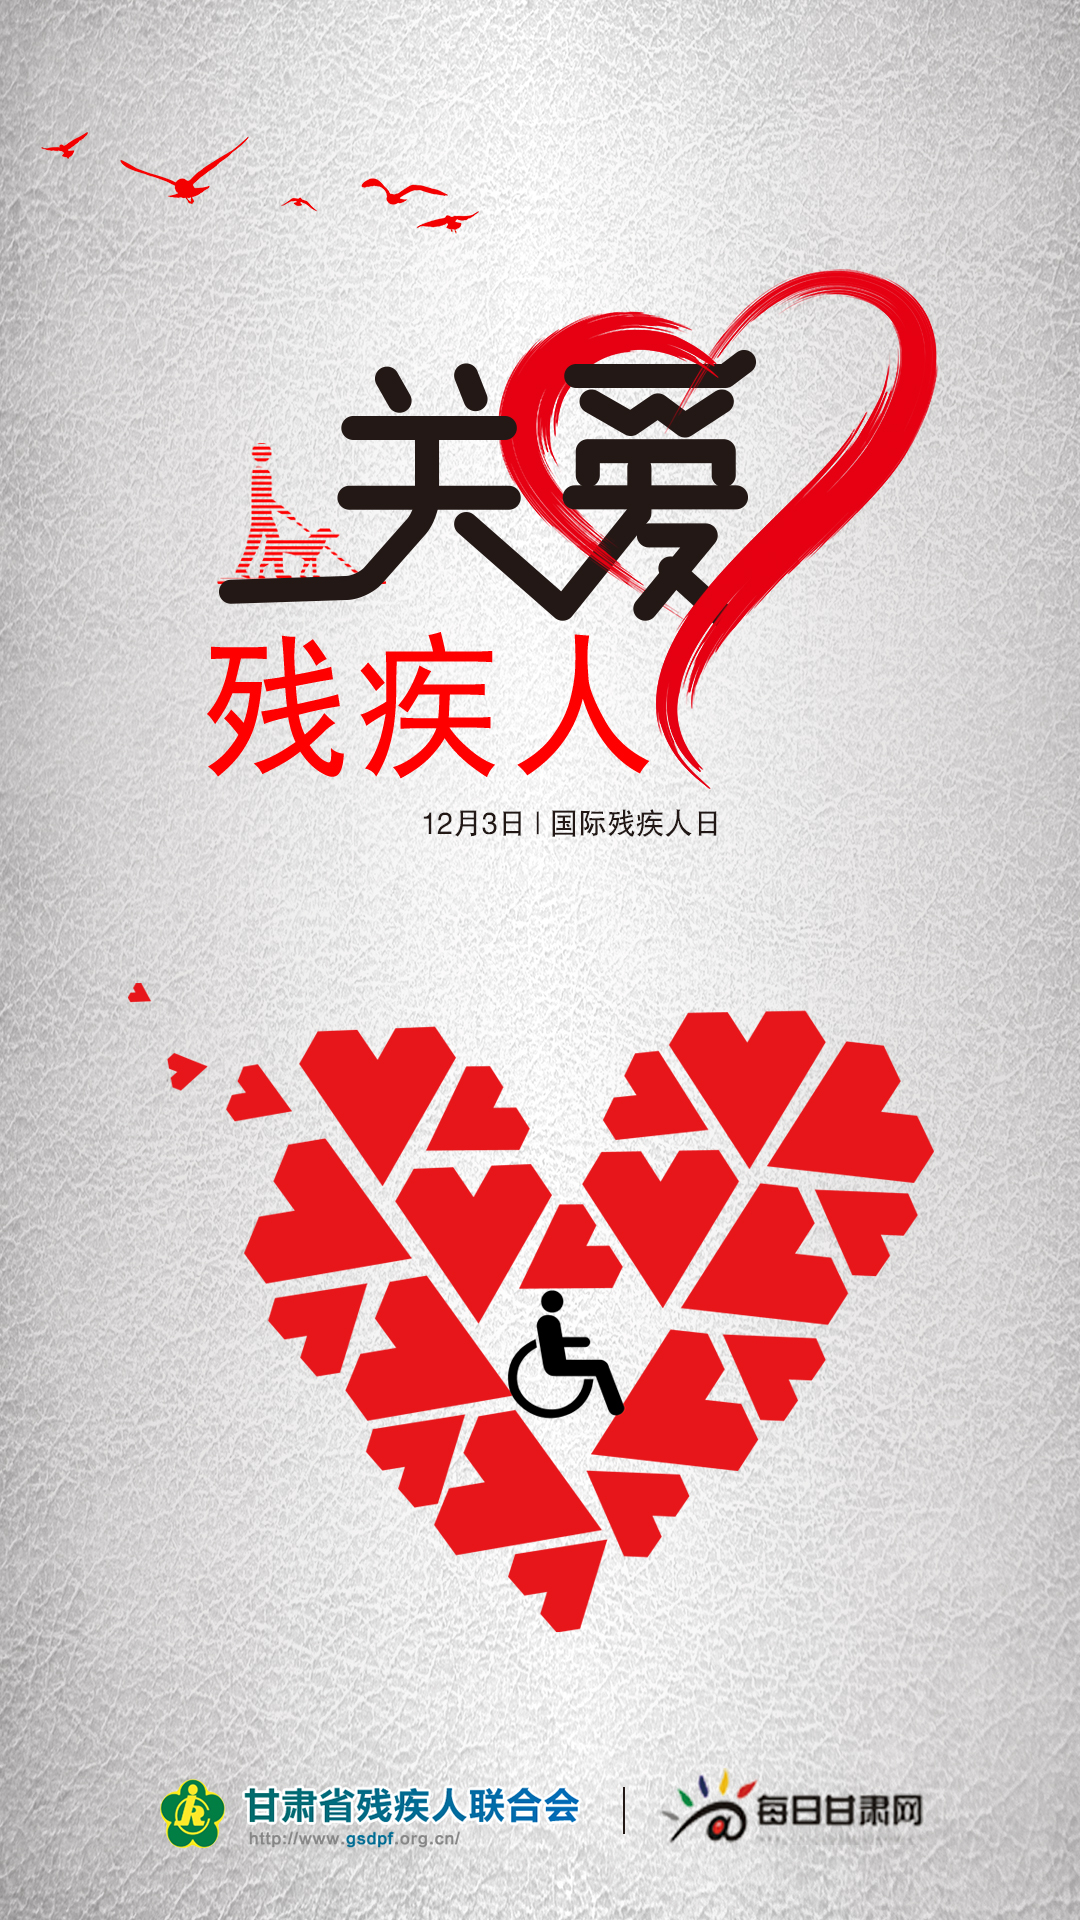 【微海报】国际残疾人日:让爱和尊重一起同行